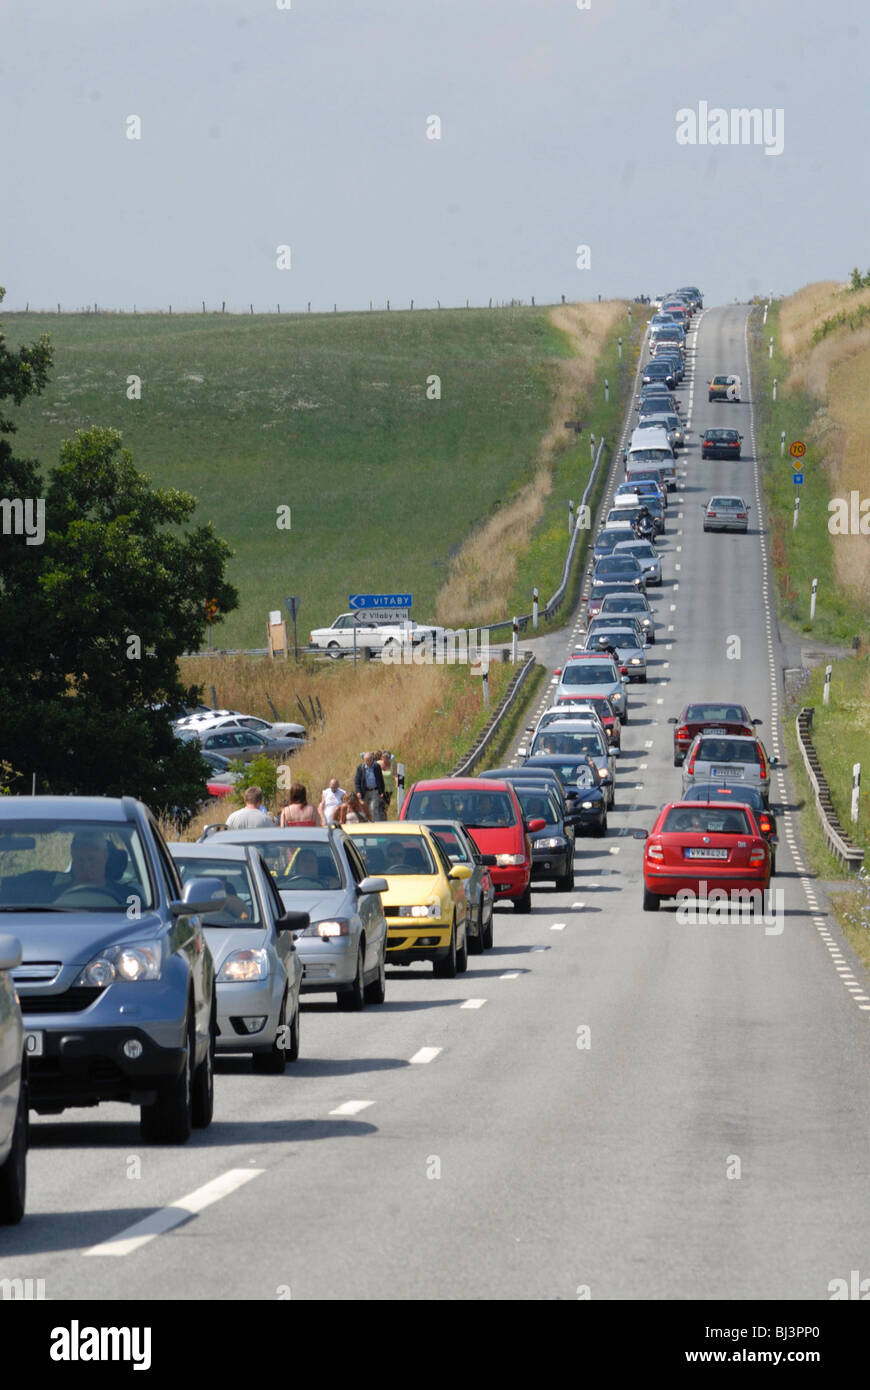 Queue of cars on a straight road, Kivik, Schonen, Schweden, Scandinavia, Europe Stock Photo